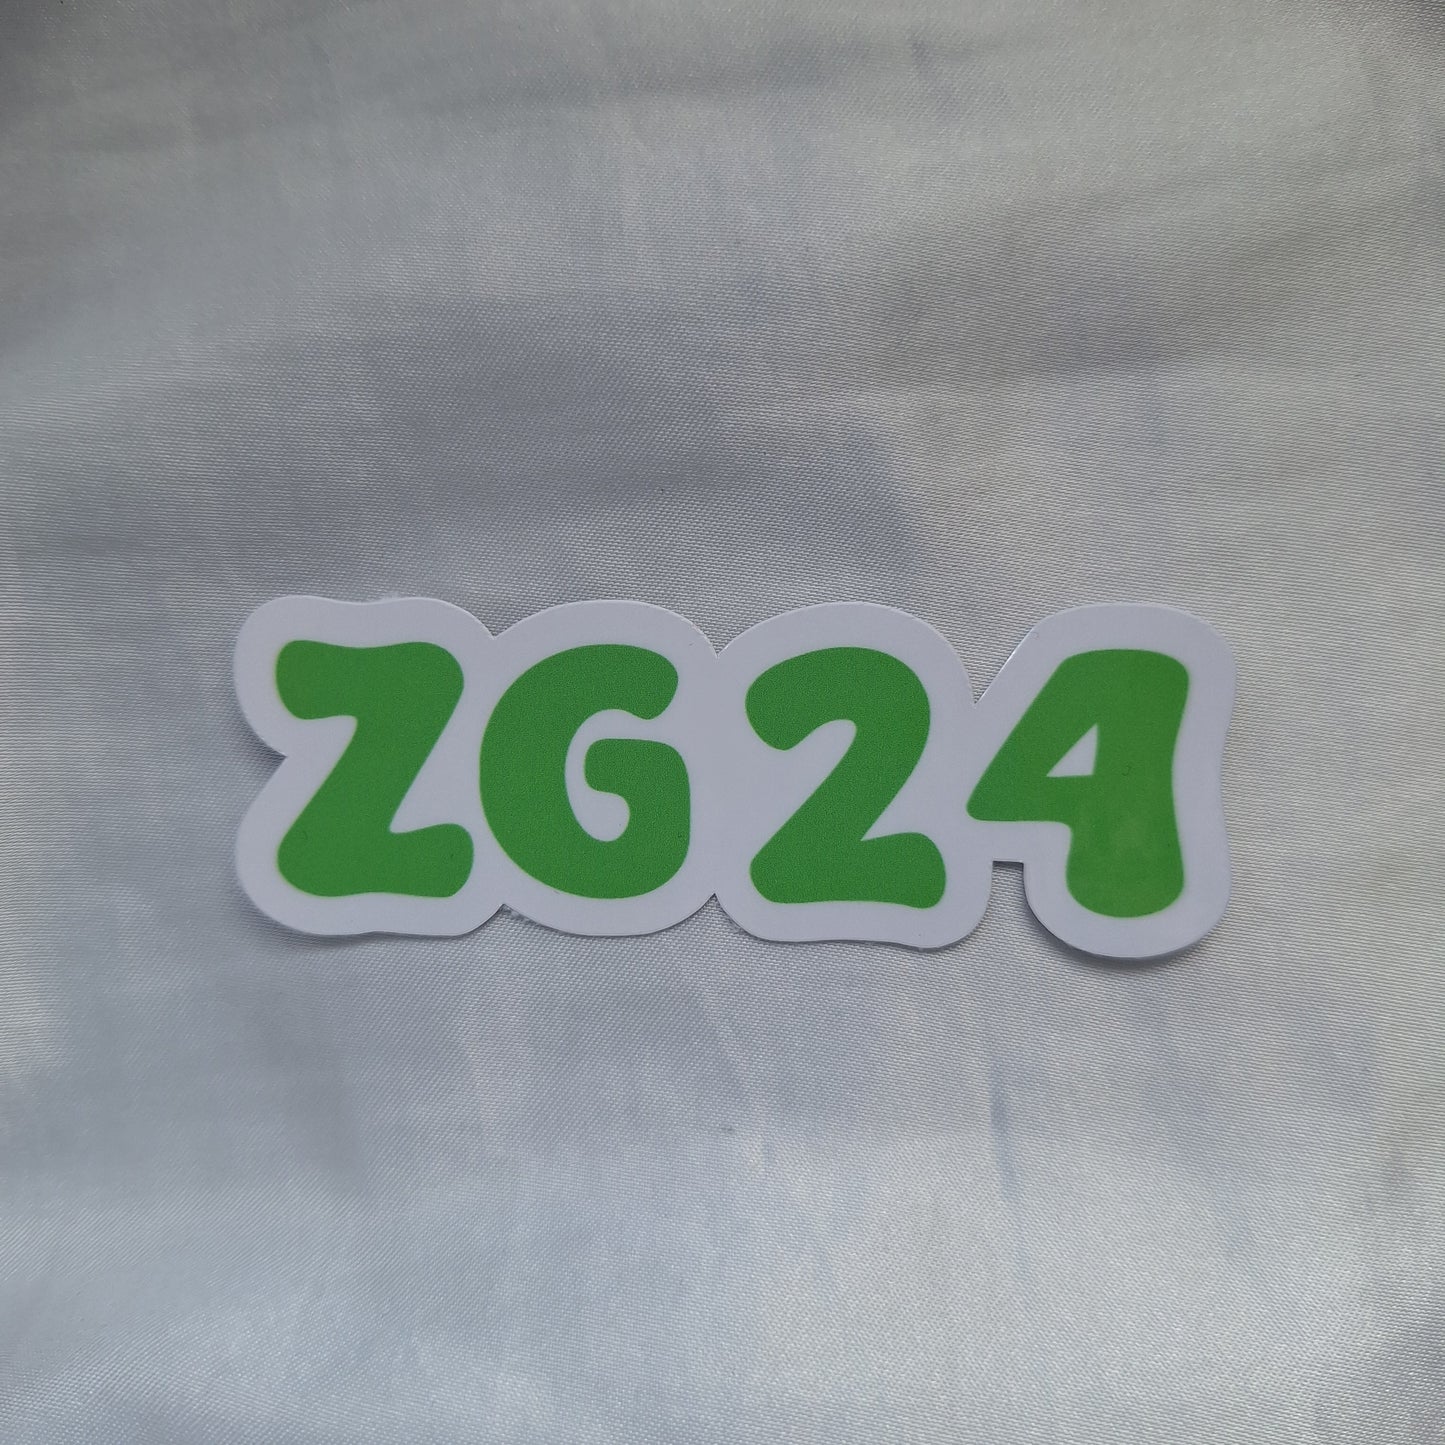 ZG 24 Sticker